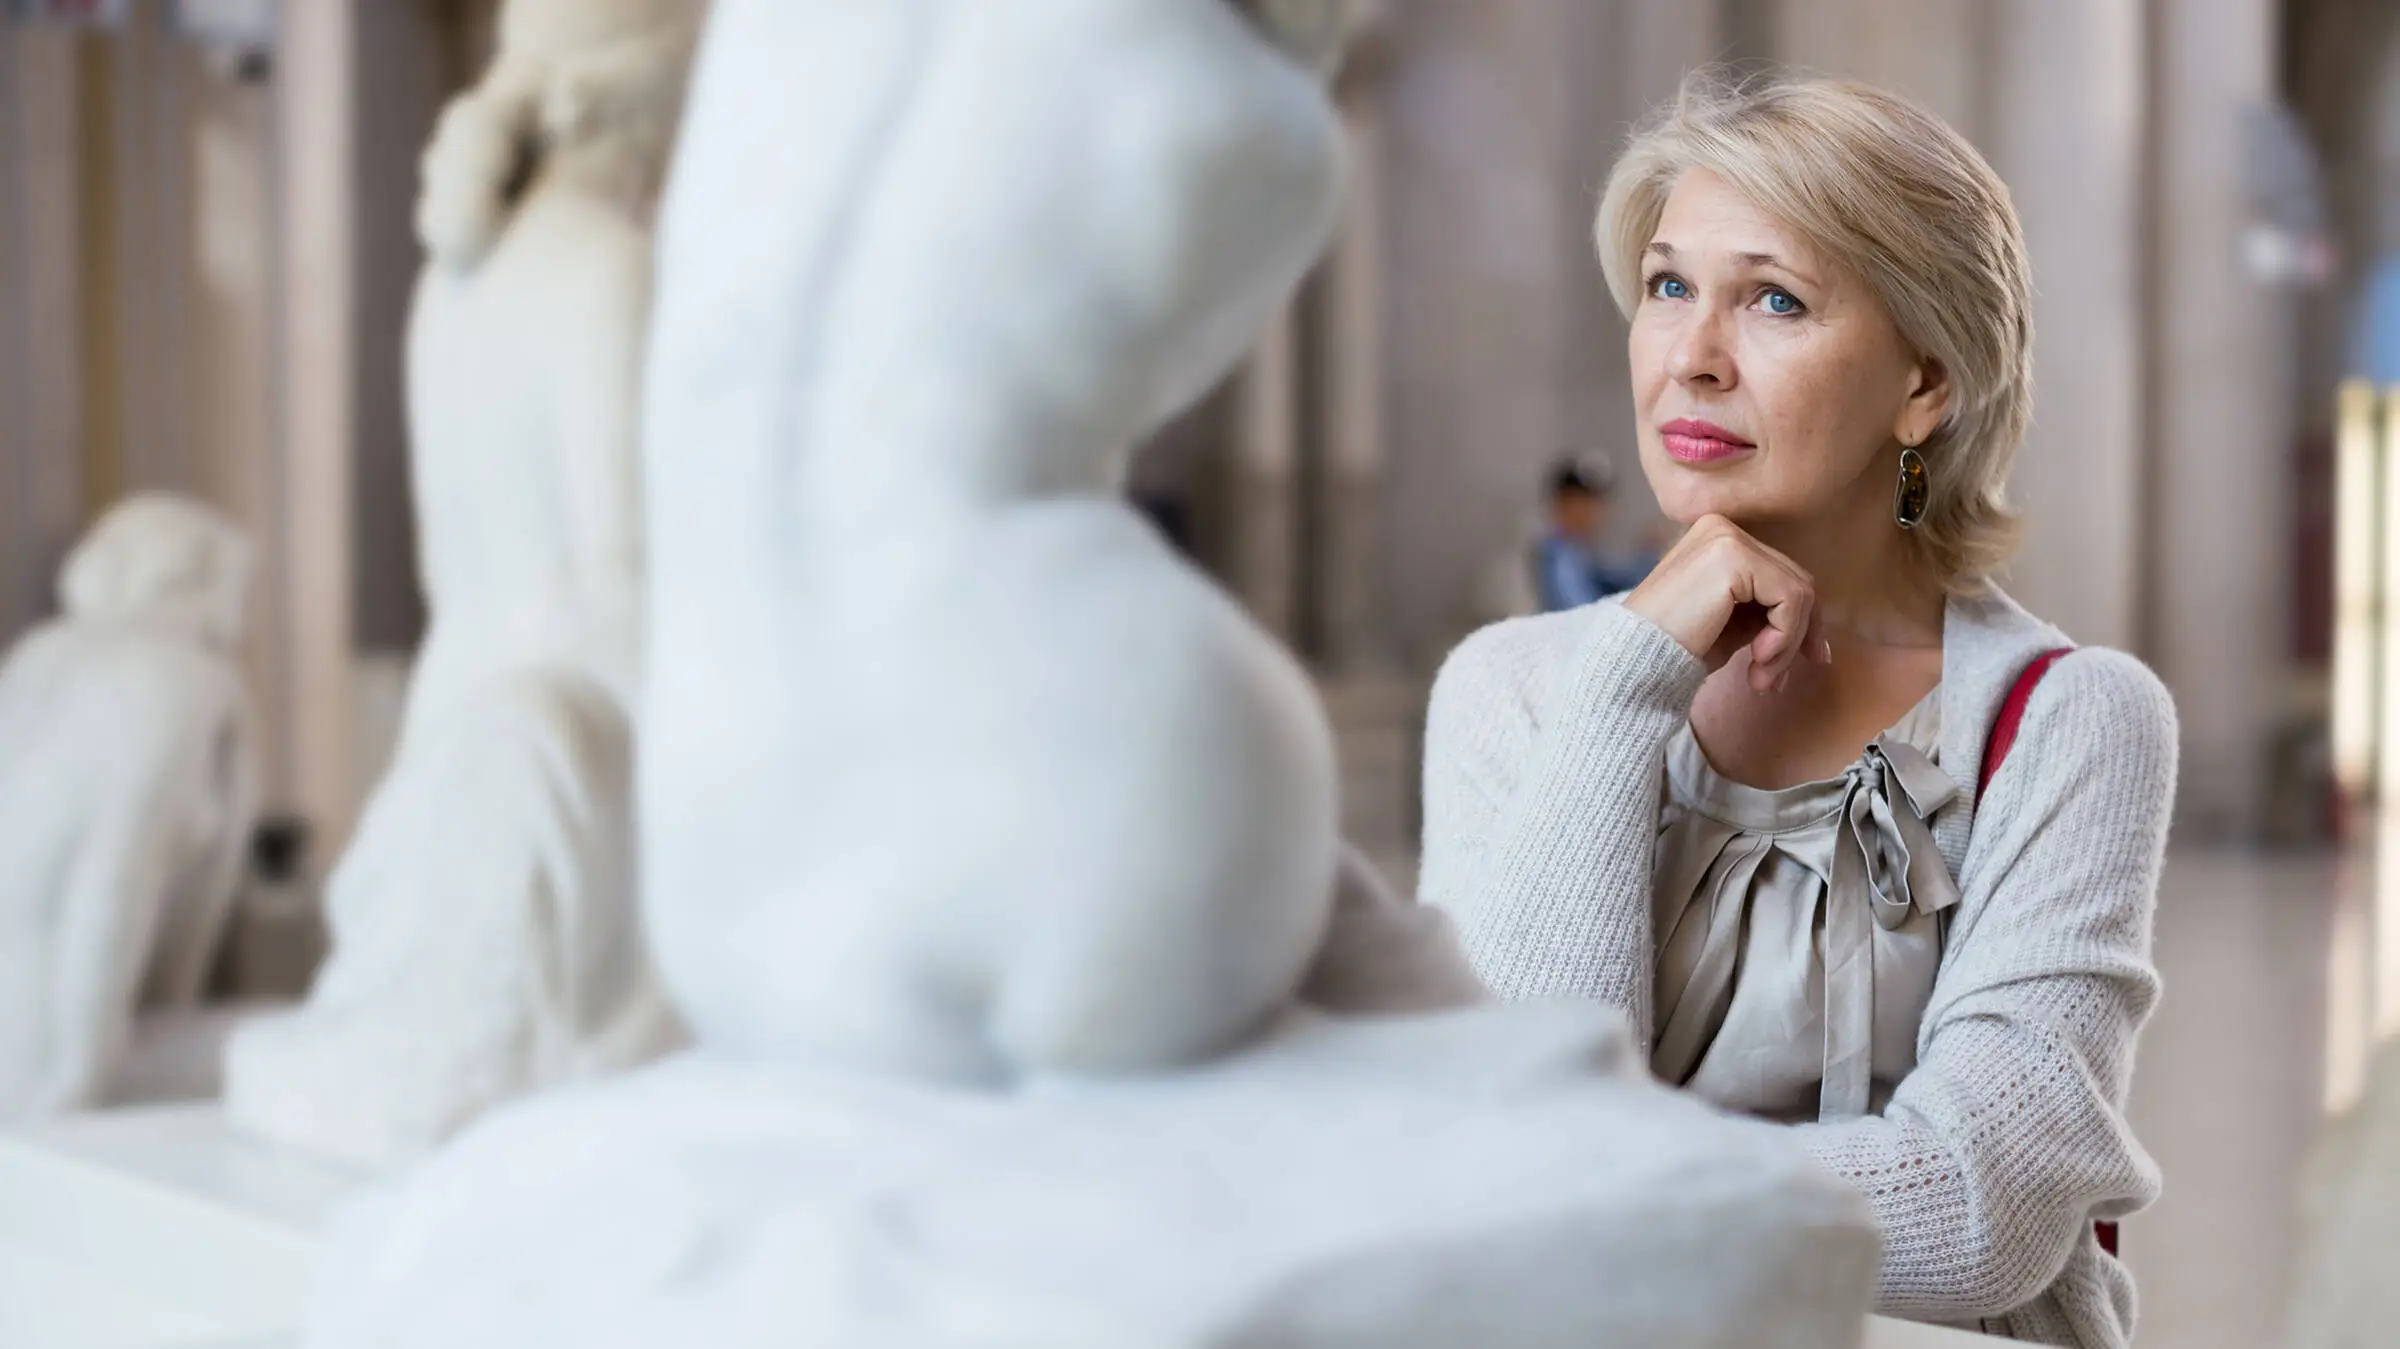 Mujer mirando una escultura blanca de una mujer